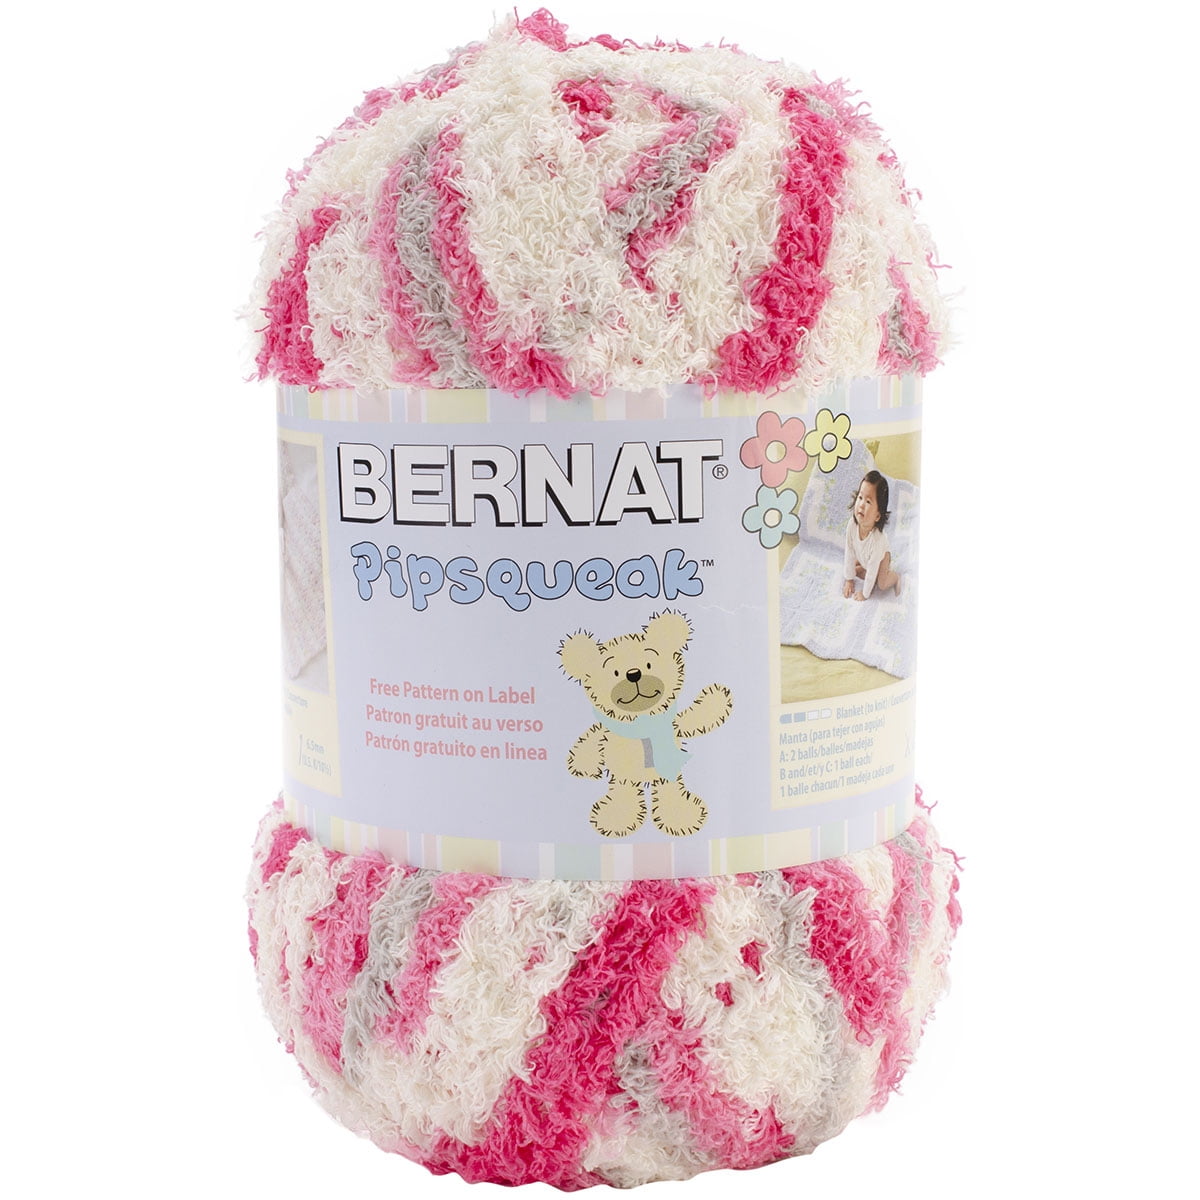 Bernat Pipsqueak Yarn-Tickle Me Pink, 1 count - Gerbes Super Markets